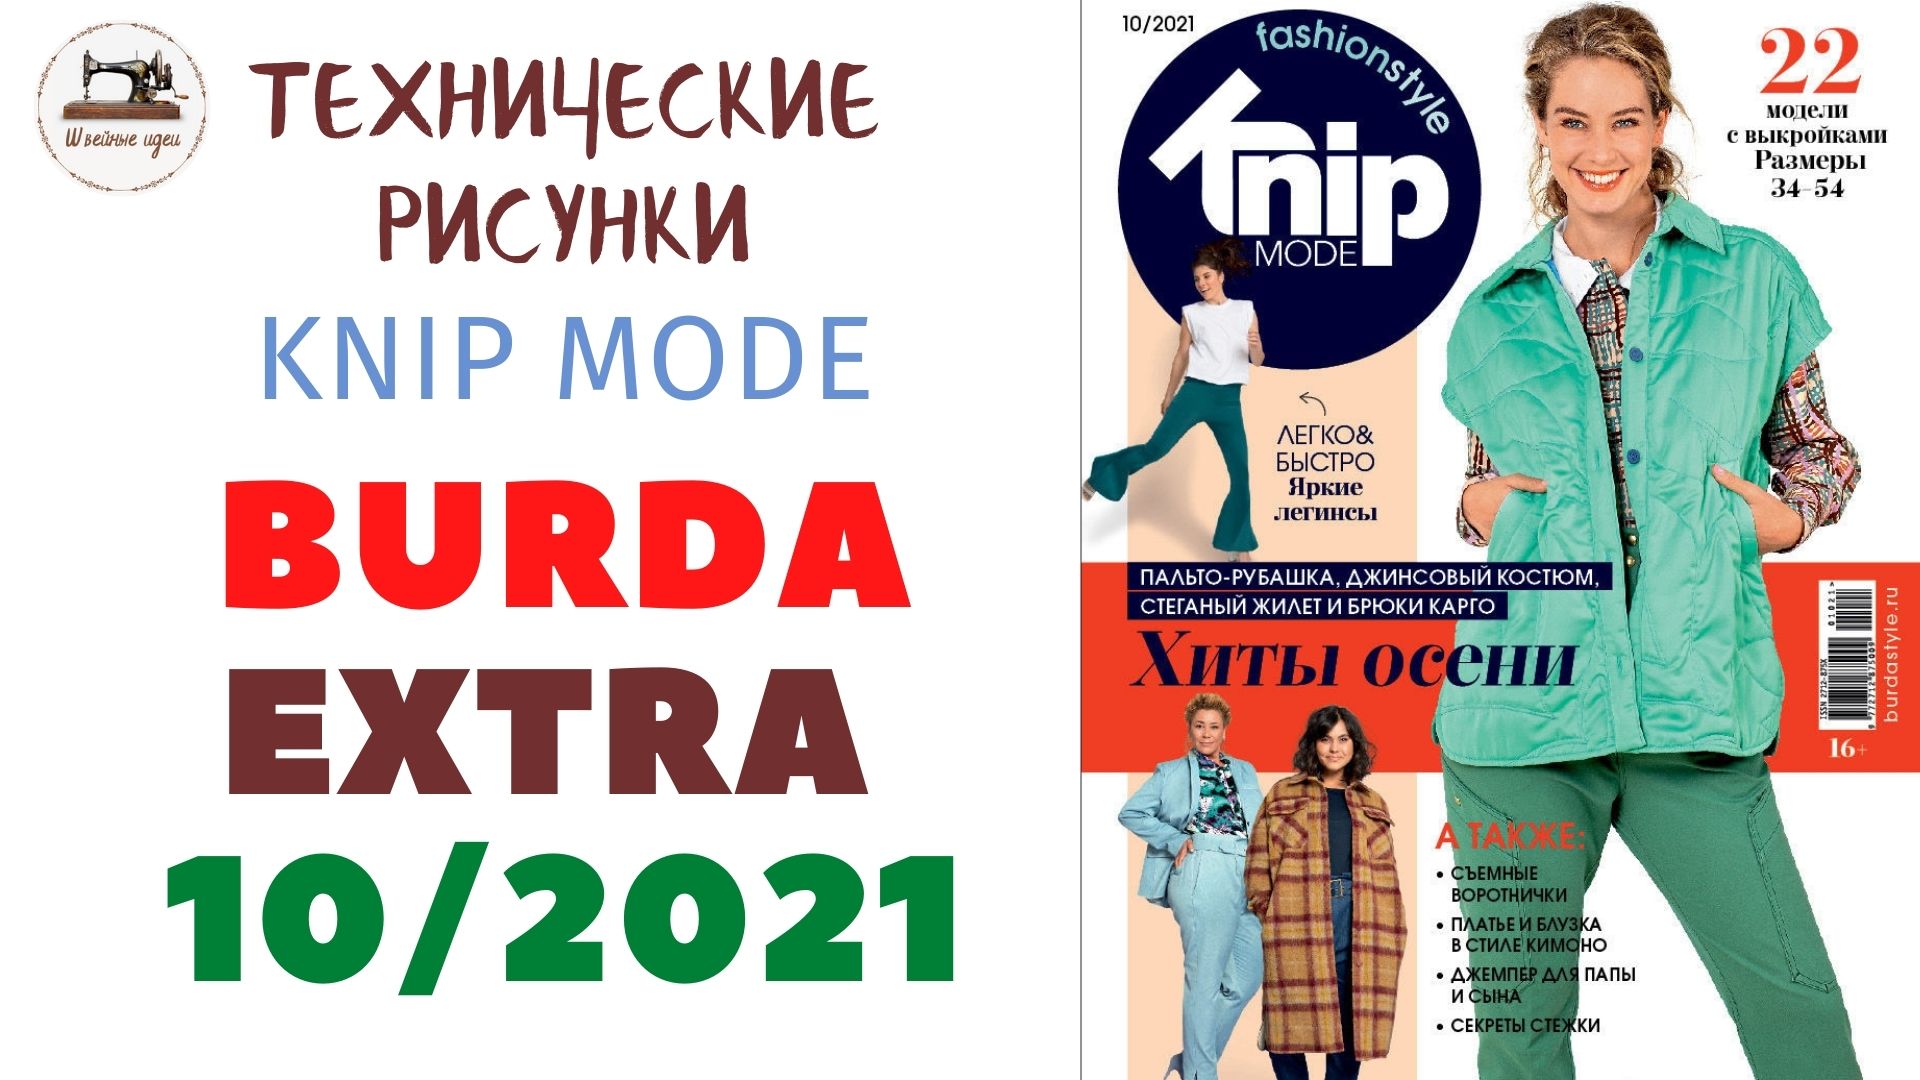 Журнал Burda  EXTRA 10/2021/ Технические рисунки/ KNIP MODE   (Бурда Экстра Россия)